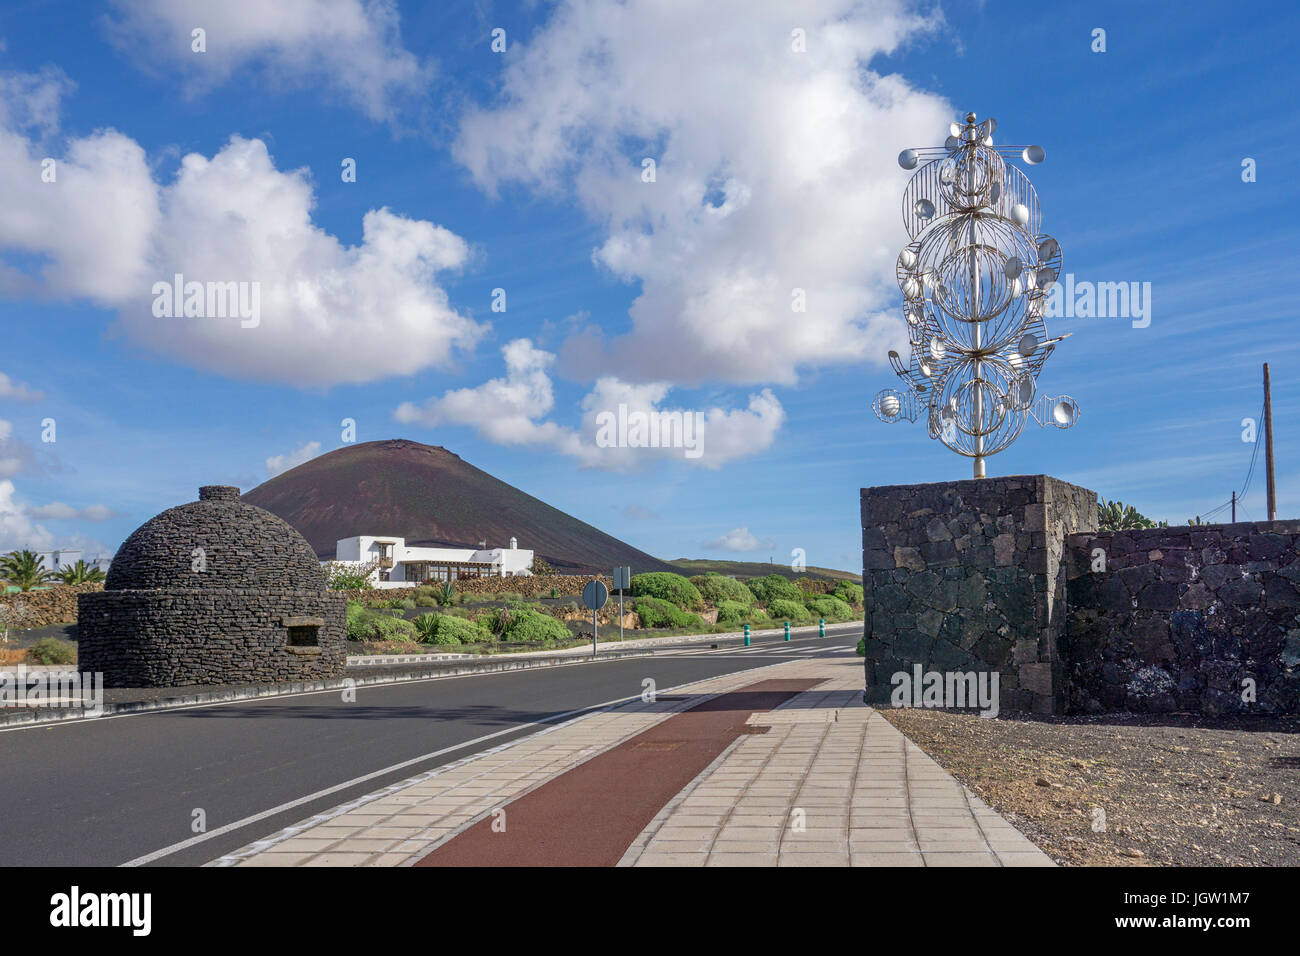 Silver Wind chime, scultura a un incrocio, uscire a Fundacion Cesar Manrique, Tahiche, Lanzarote, Isole canarie, Spagna, Europa Foto Stock